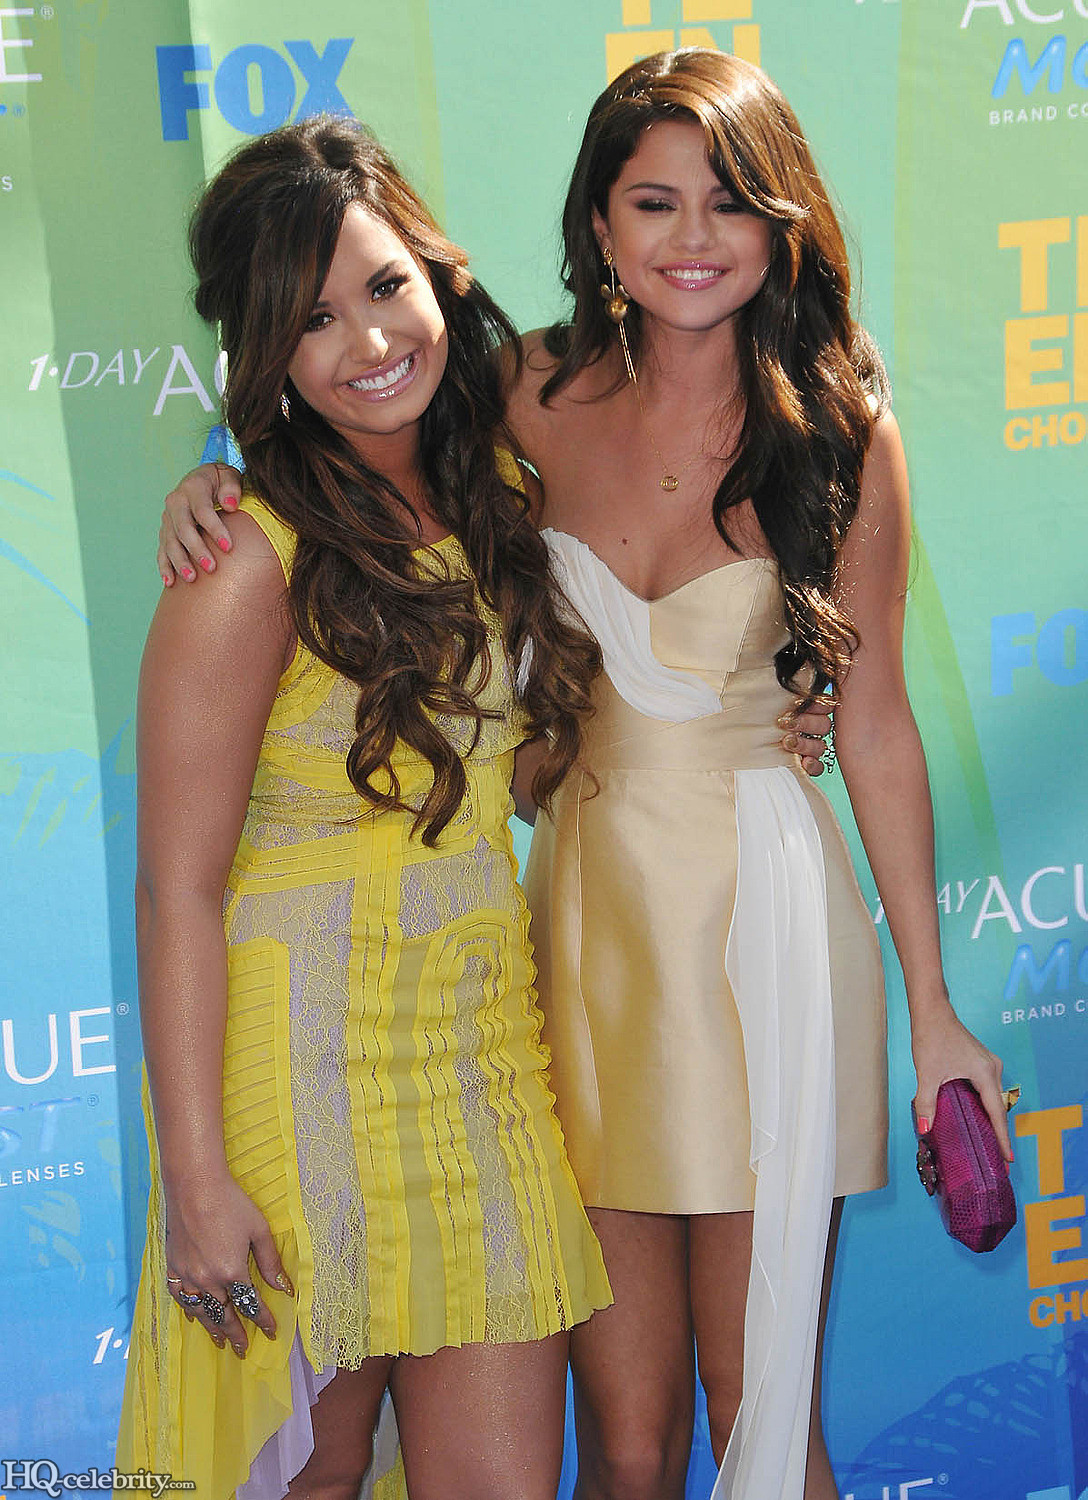 Selena Gomez at the 2011 Teen Choice Awards